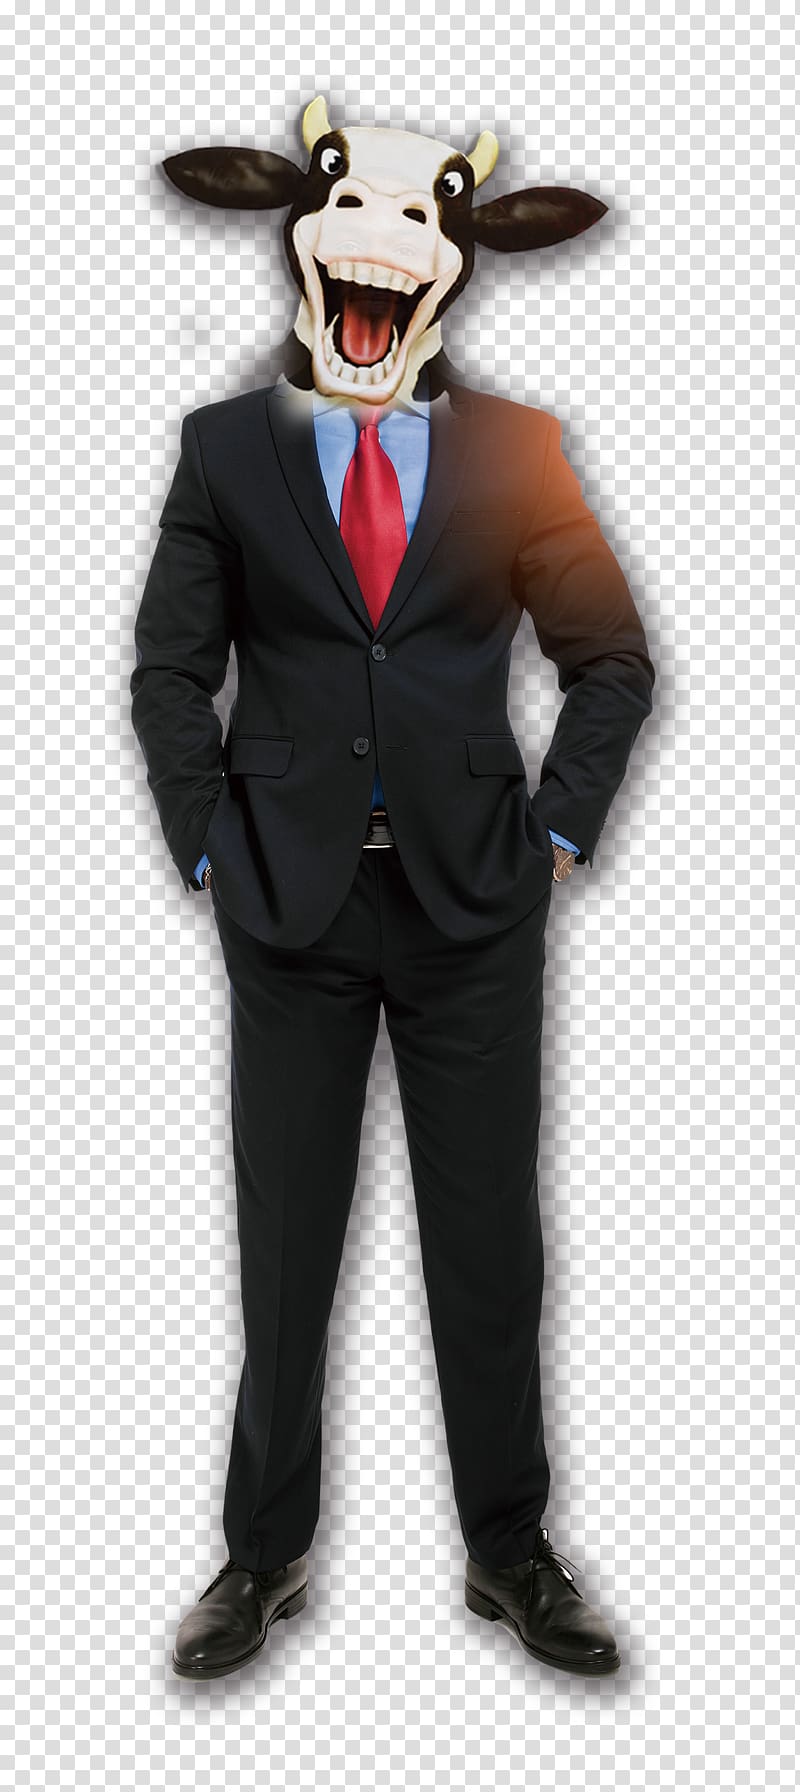 Businessperson Suit Icon, Ngau Tau businessman transparent background PNG clipart